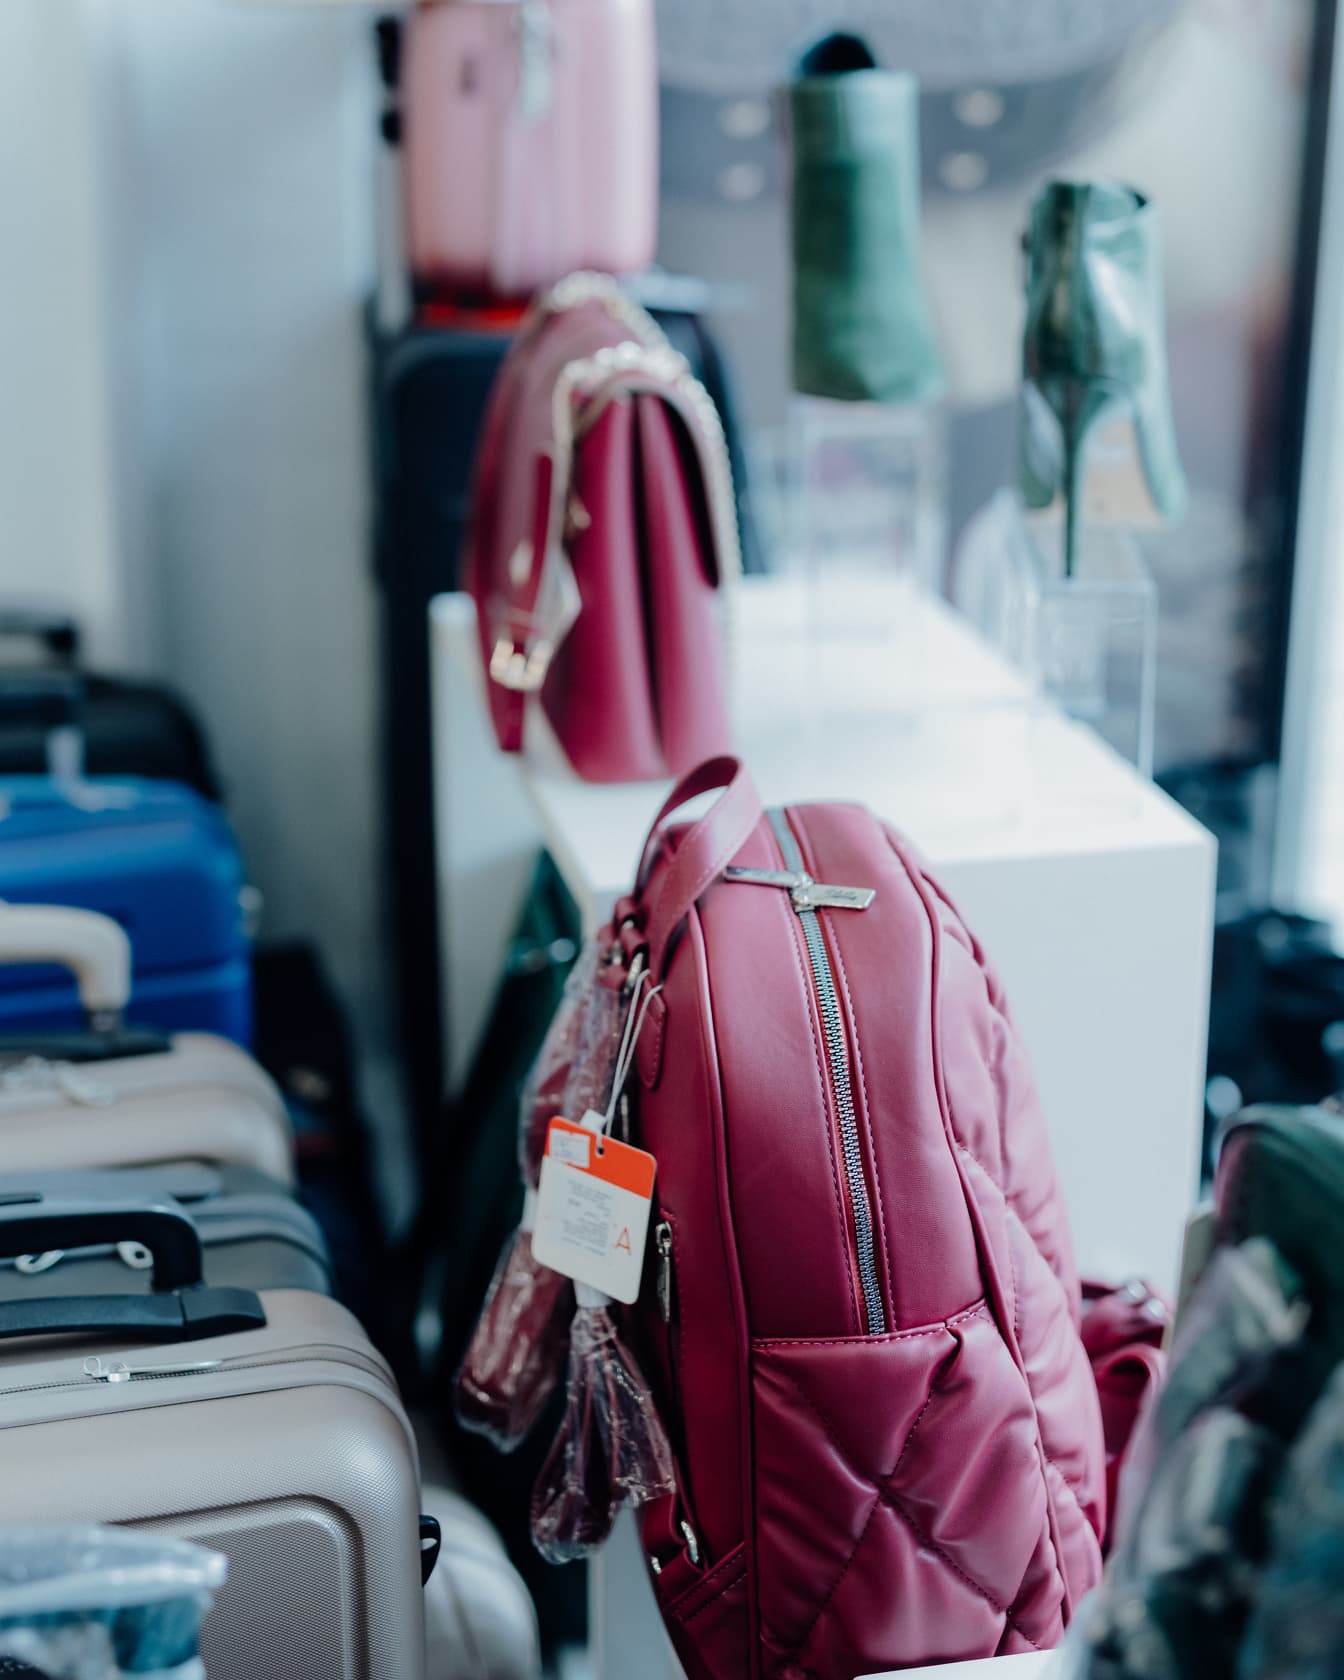 Rosafarbener modischer Rucksack im Regal im Geschäft mit anderen Handtaschen, die zum Verkauf angeboten werden